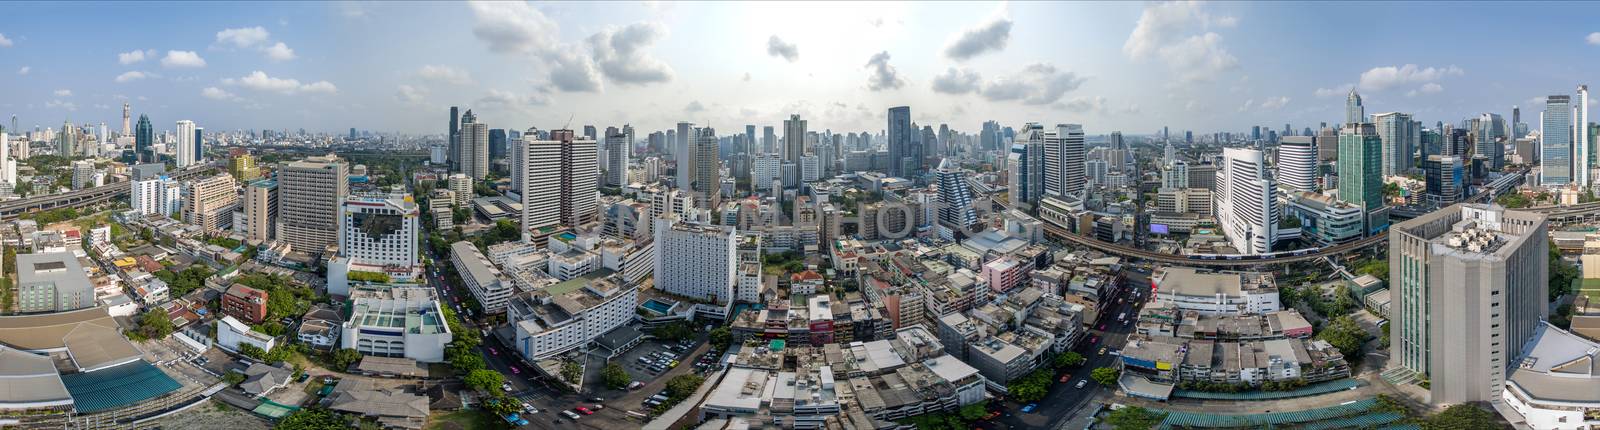 Bangkok City 360° panorama, Nana and Sukhumvit Road Aerial Photography